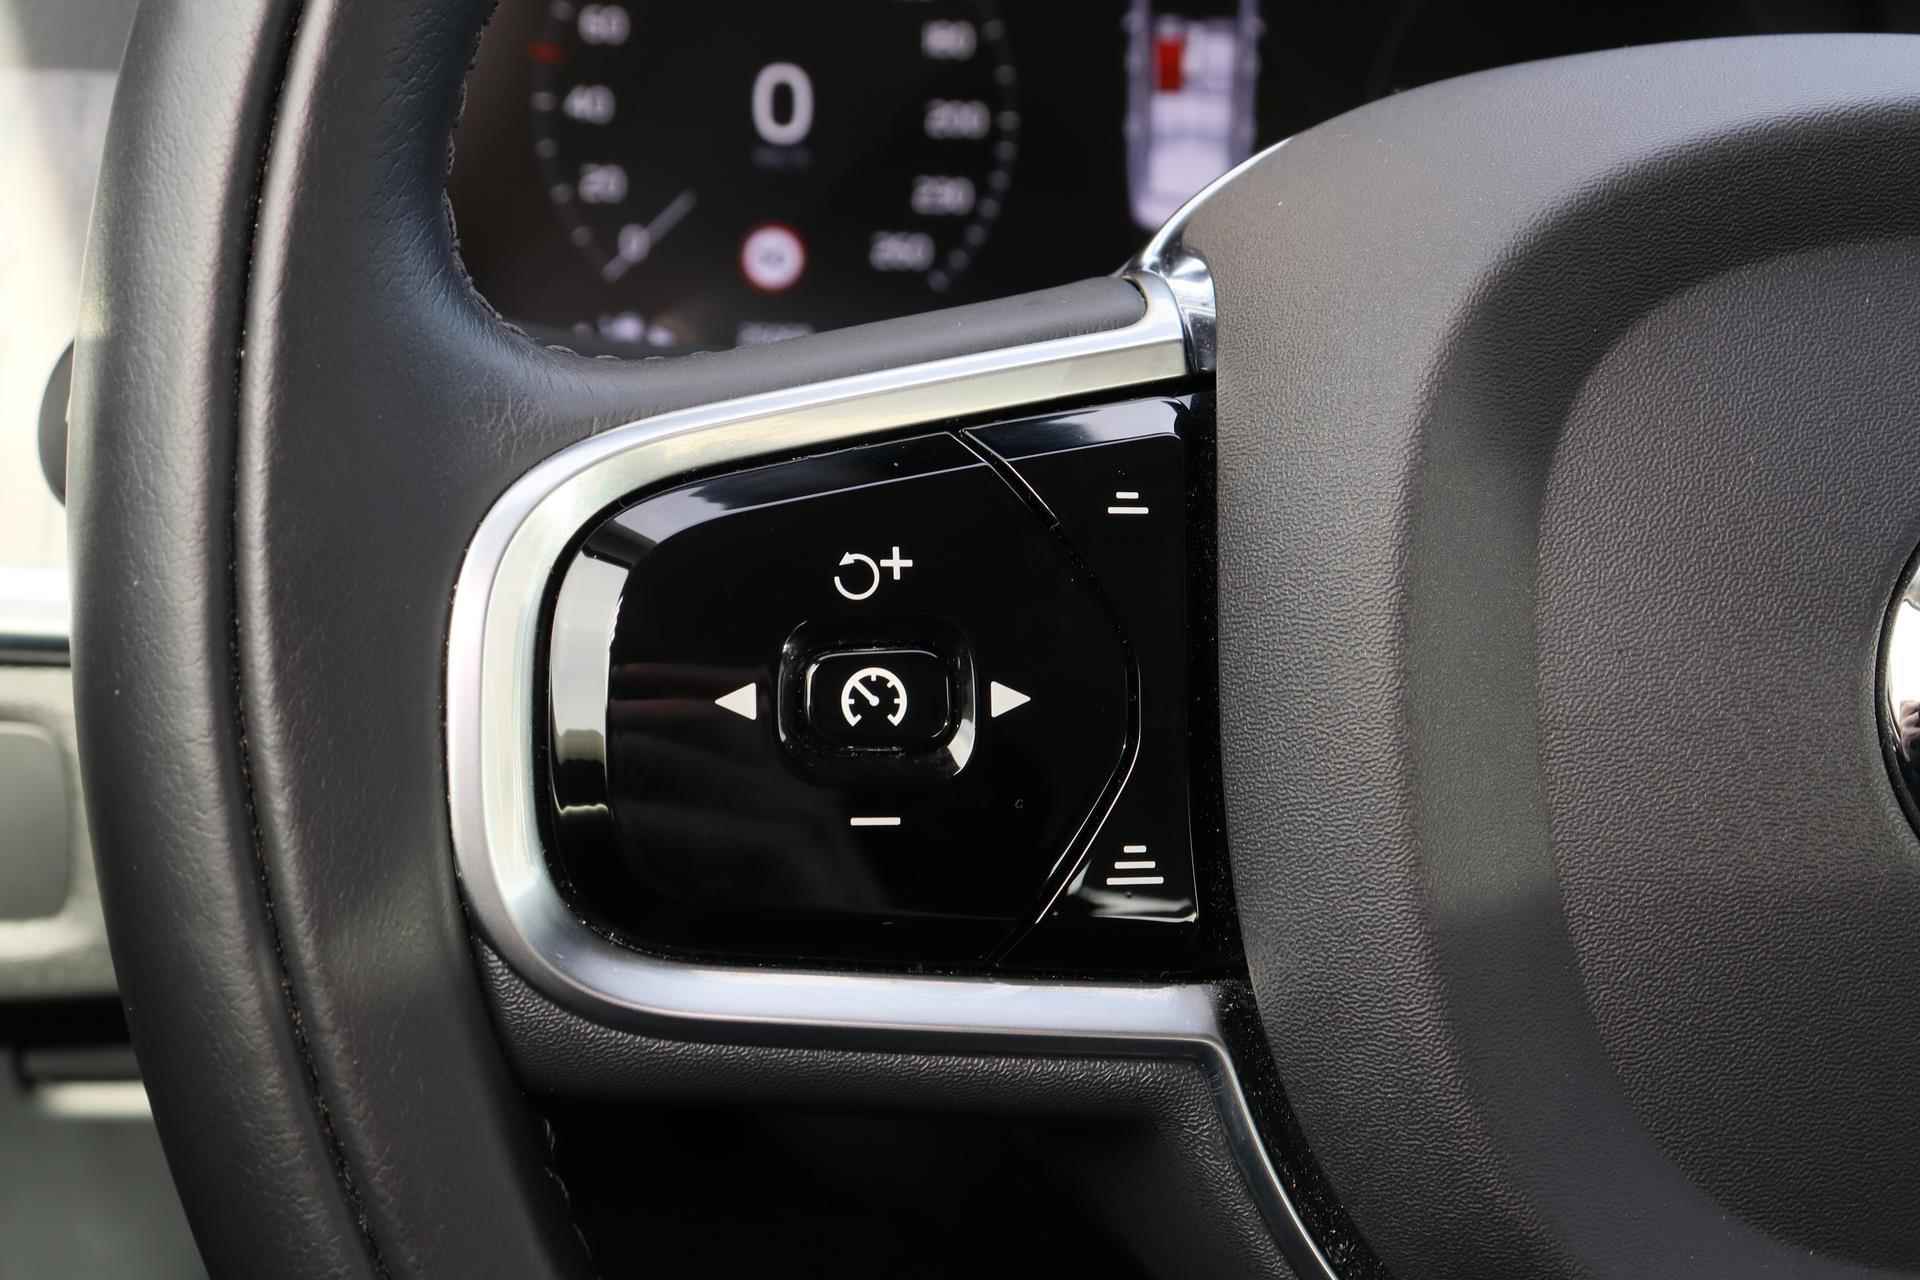 Volvo S90 T8 AWD Inscription - IntelliSafe Assist & Surround - 360º Camera - Harman/Kardon audio - Adaptieve LED koplampen - Verwarmde voorstoelen, stuur & achterbank - Parkeersensoren voor & achter - Elektr. bedienb. voorstoelen met geheugen - Standkachel - 19' LMV - 19/26